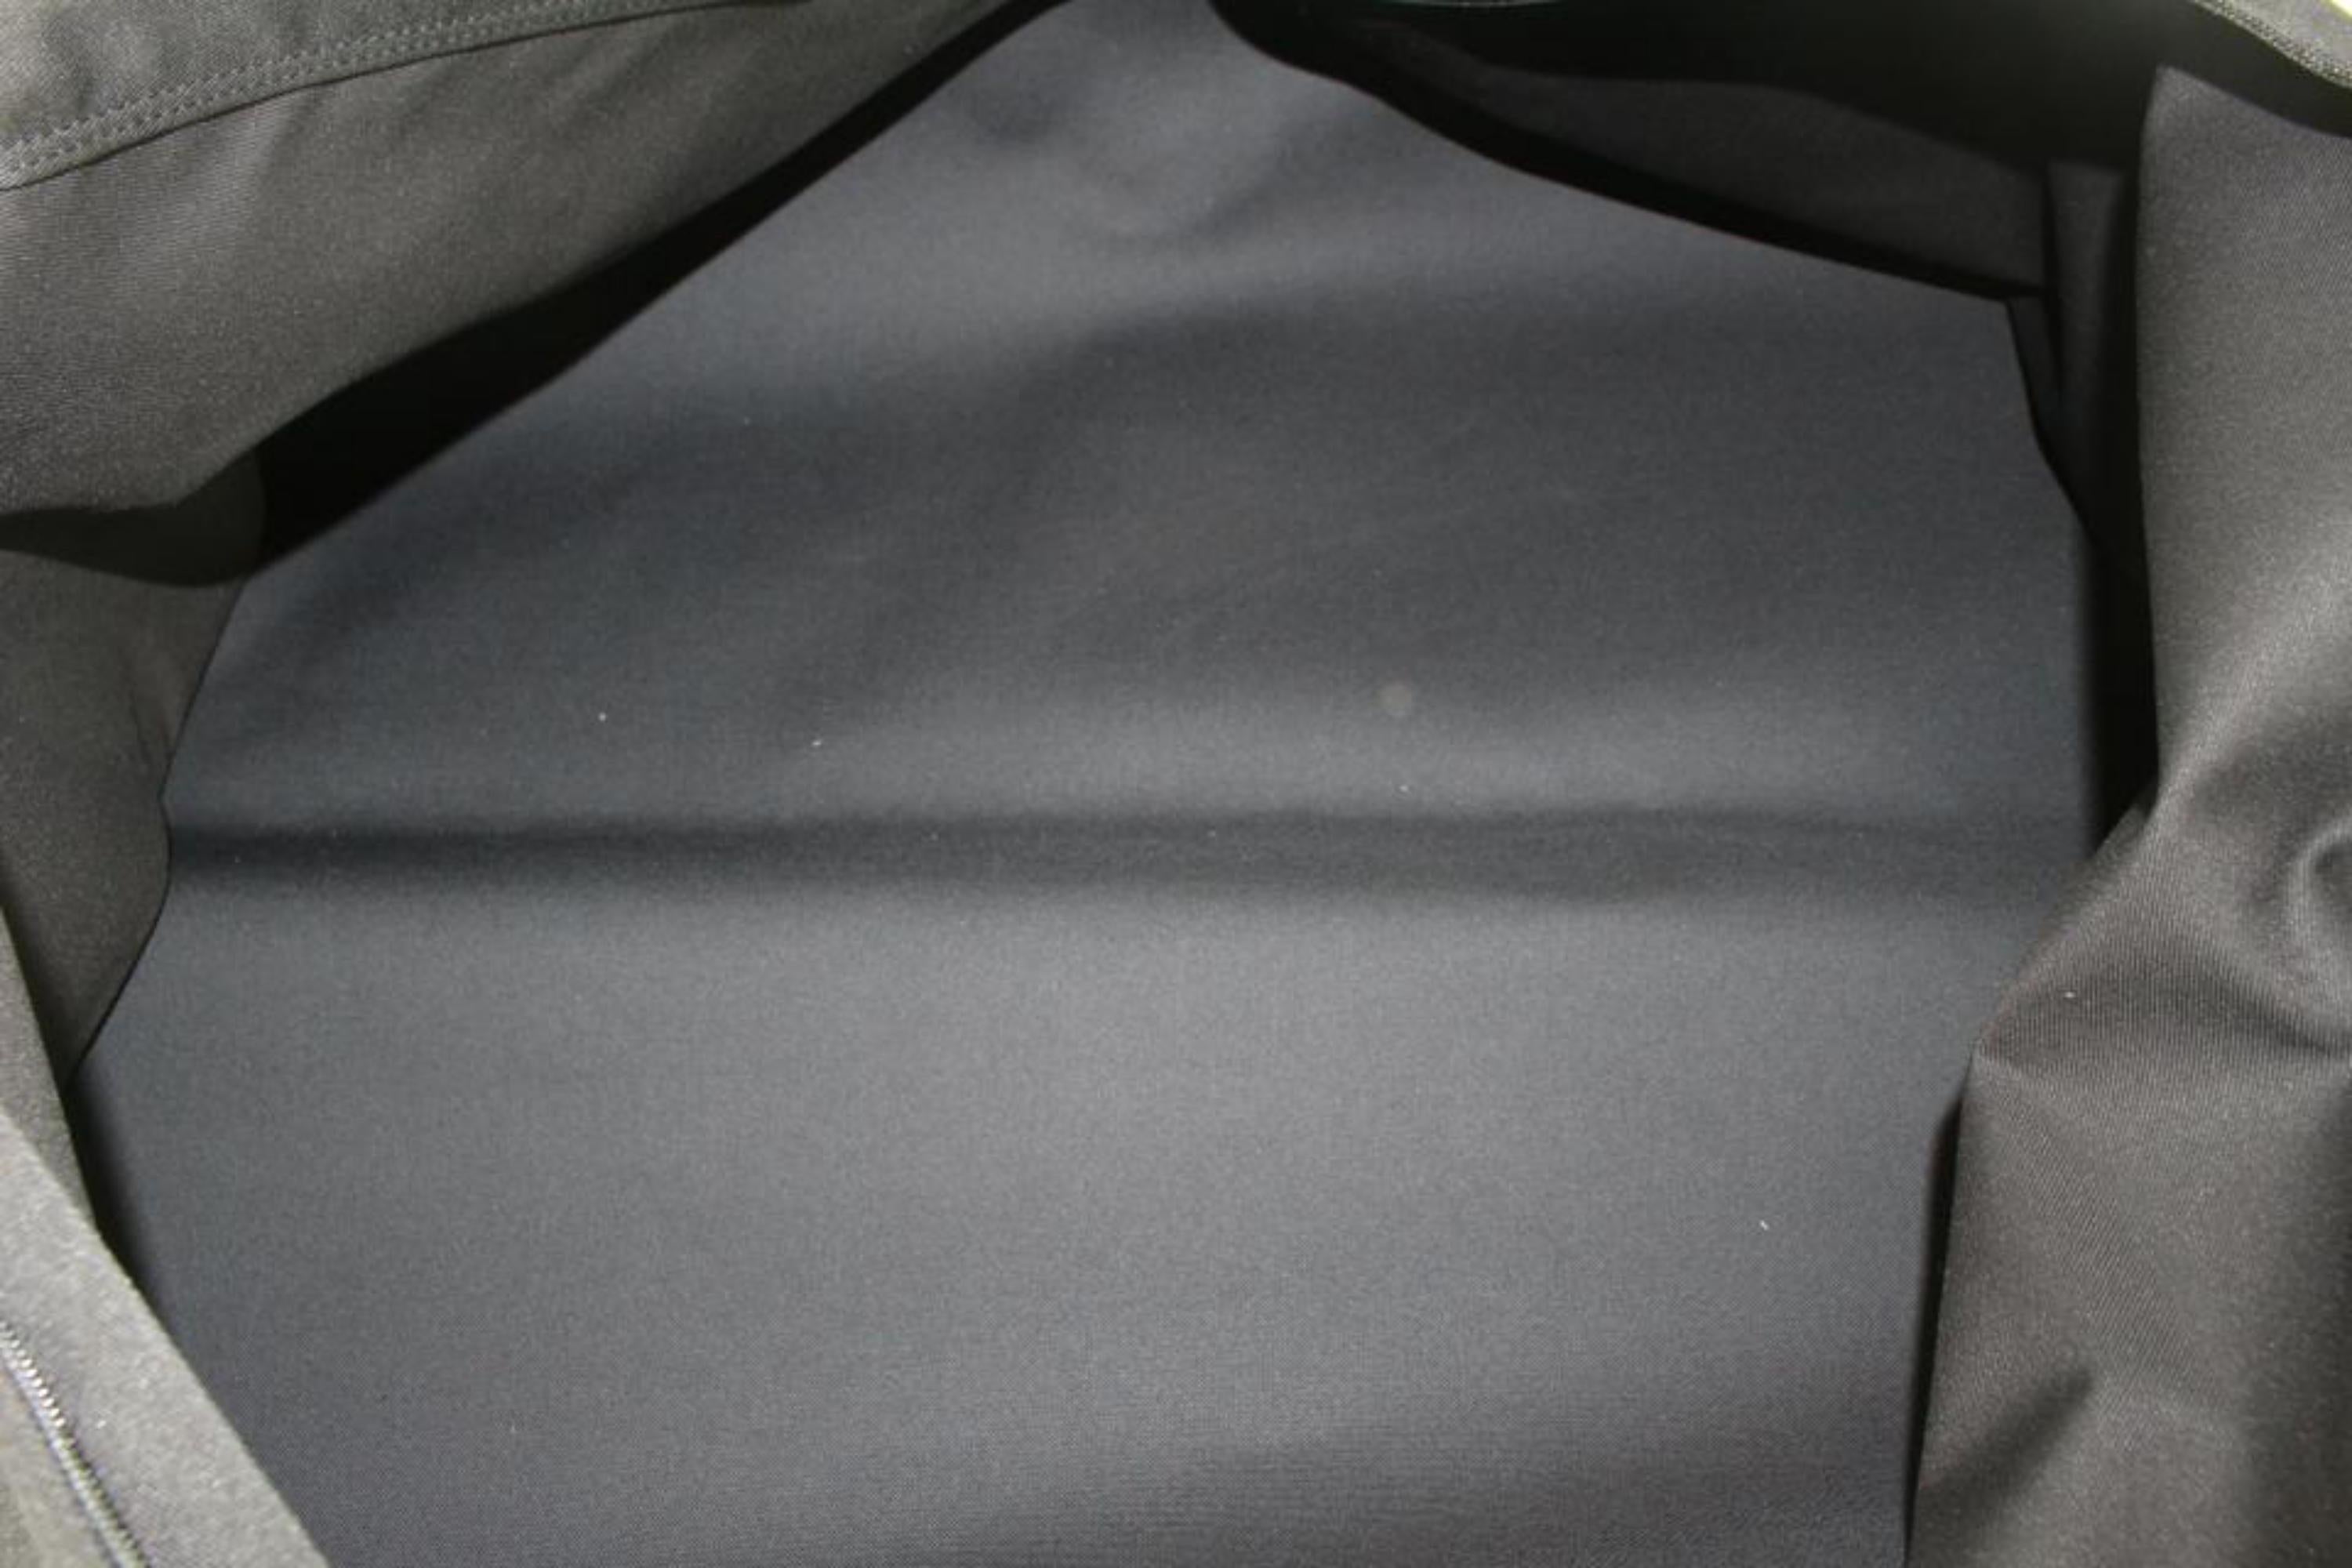 Louis Vuitton Brown Monogram Garment Bag QJB0YC1Y0B026